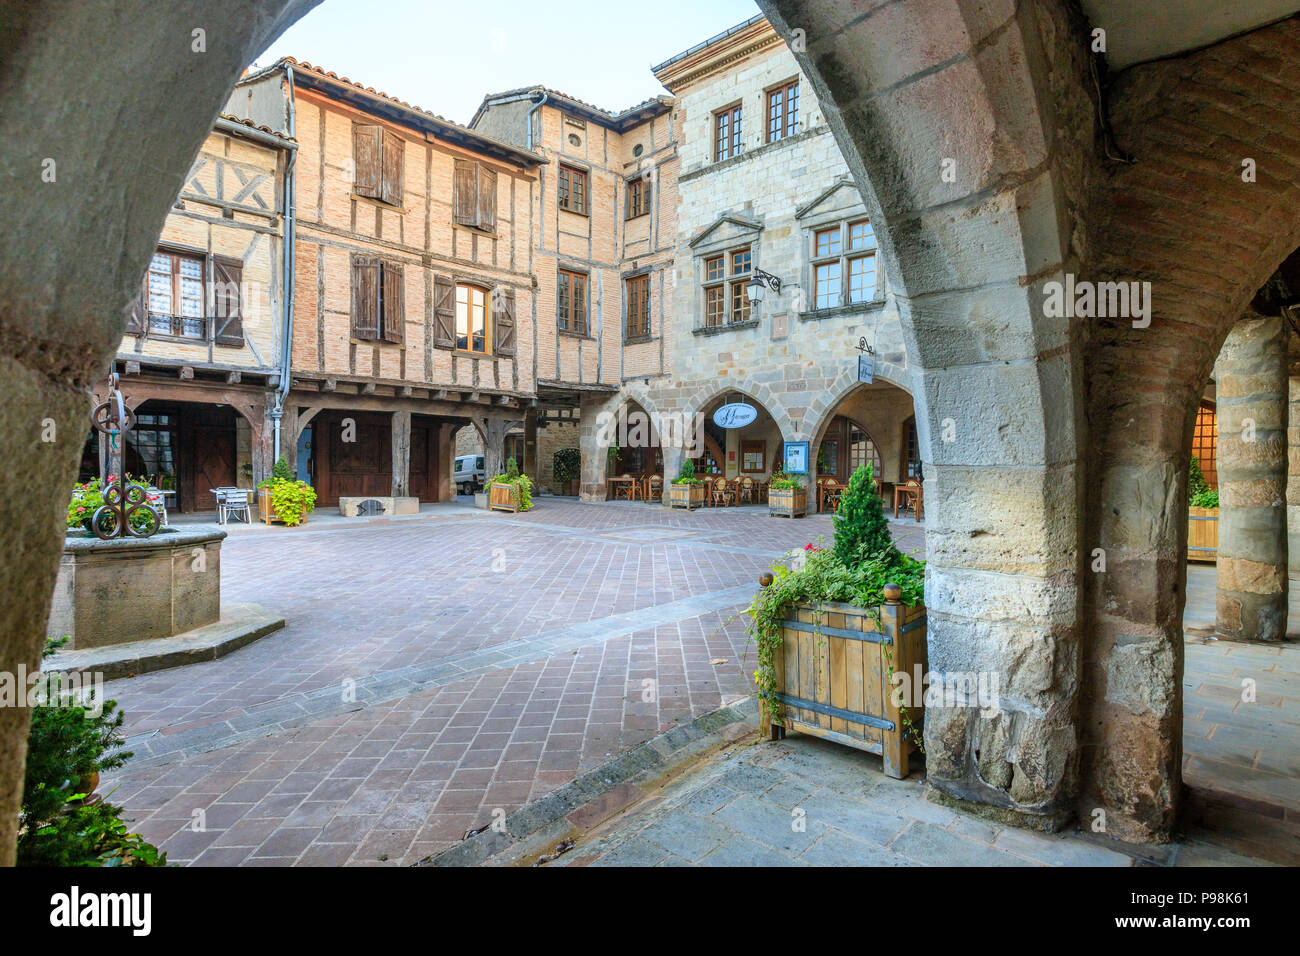 France, Tarn, Castelnau de Montmiral, labelled Les Plus Beaux Villages de France (The Most Beautiful Villages of France), medieval market square calle Stock Photo